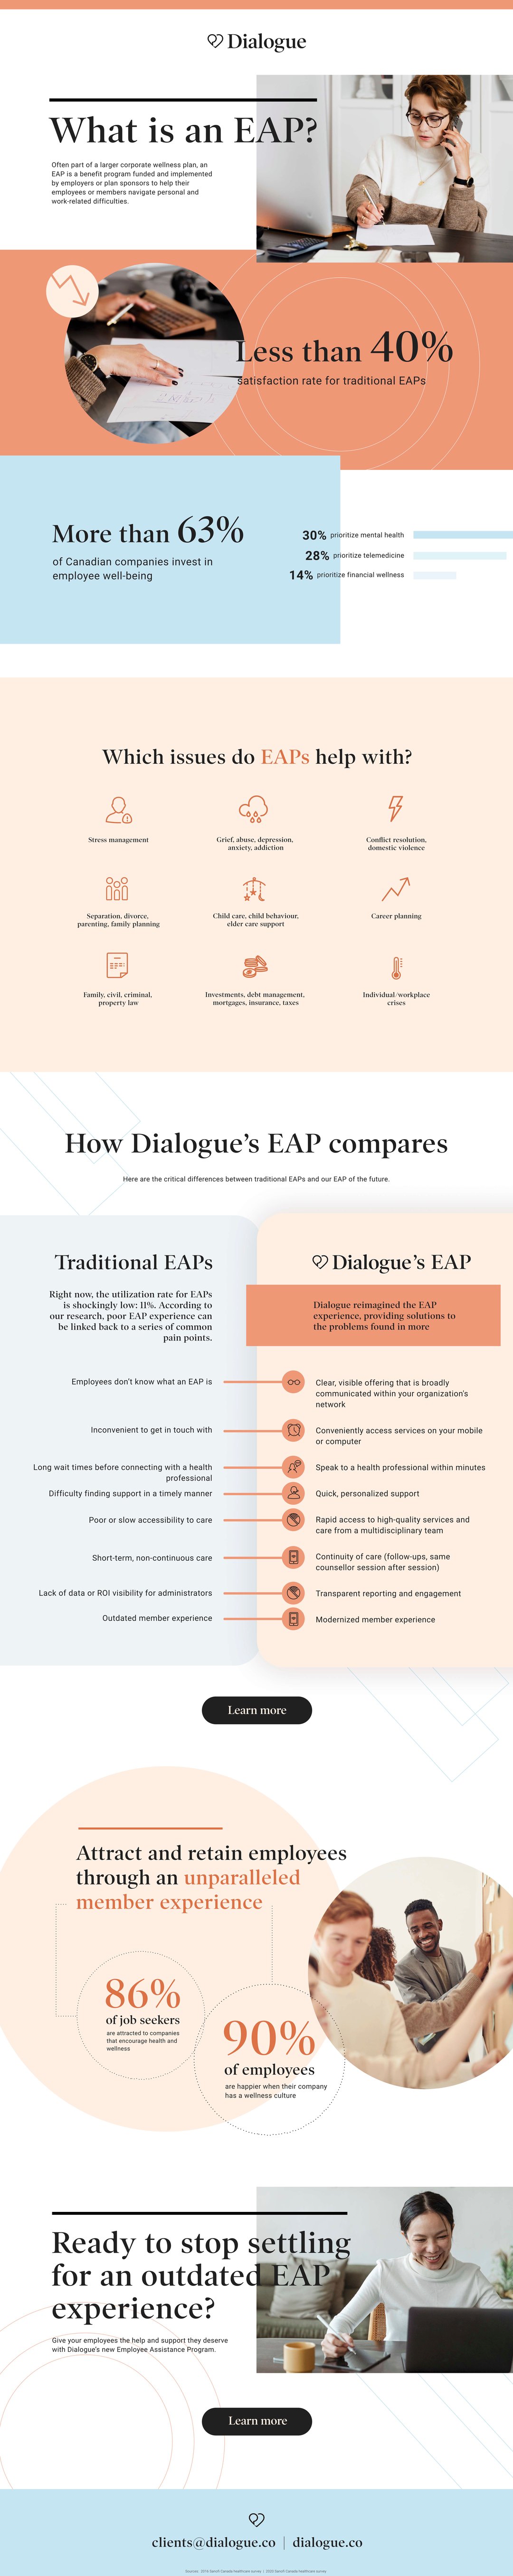 Dialogue EAP 